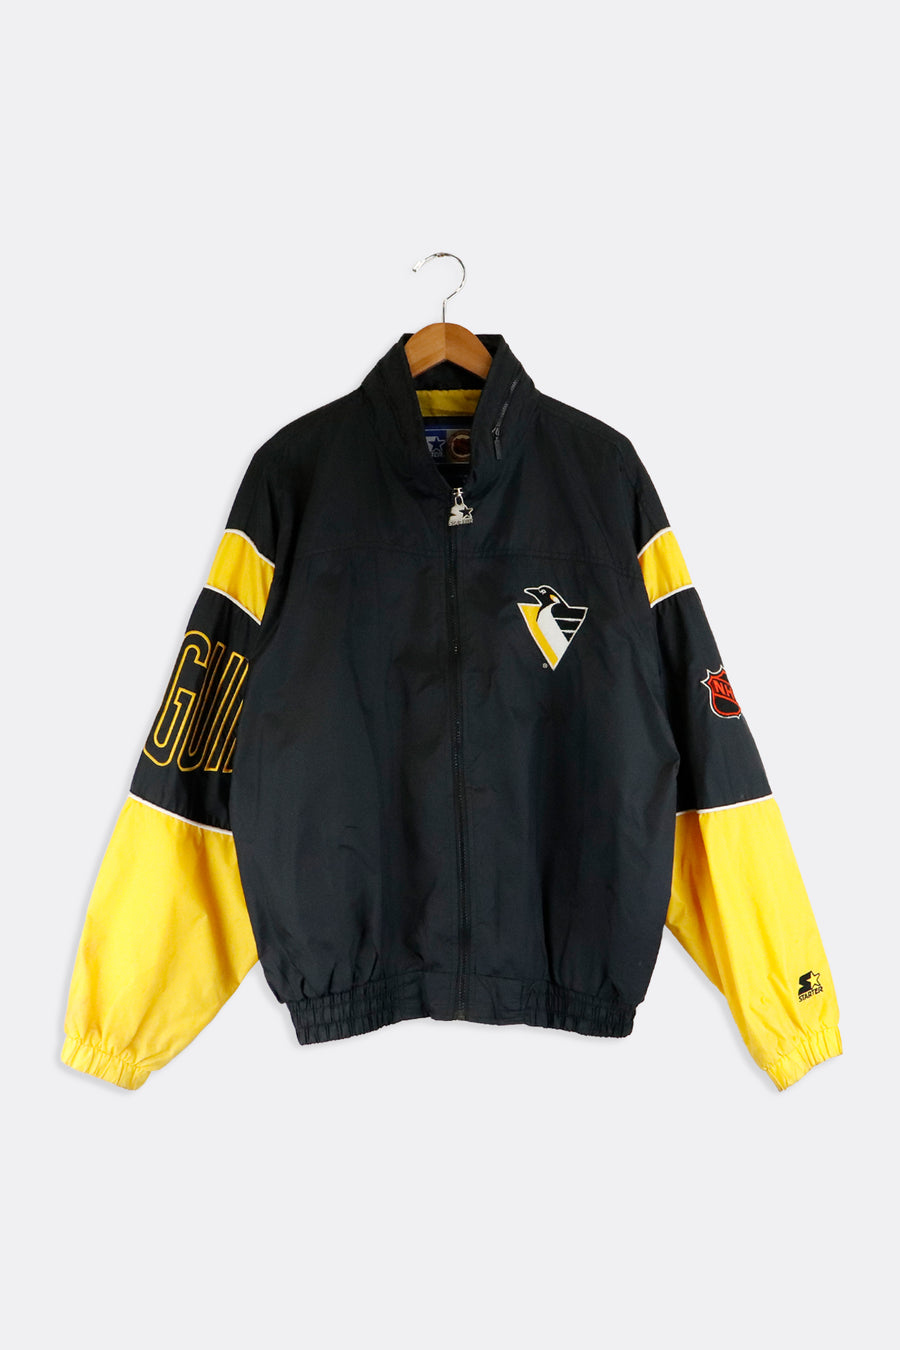 Vintage Starter NHL Pittsburgh Penguins Zip Up Jacket Sz XL